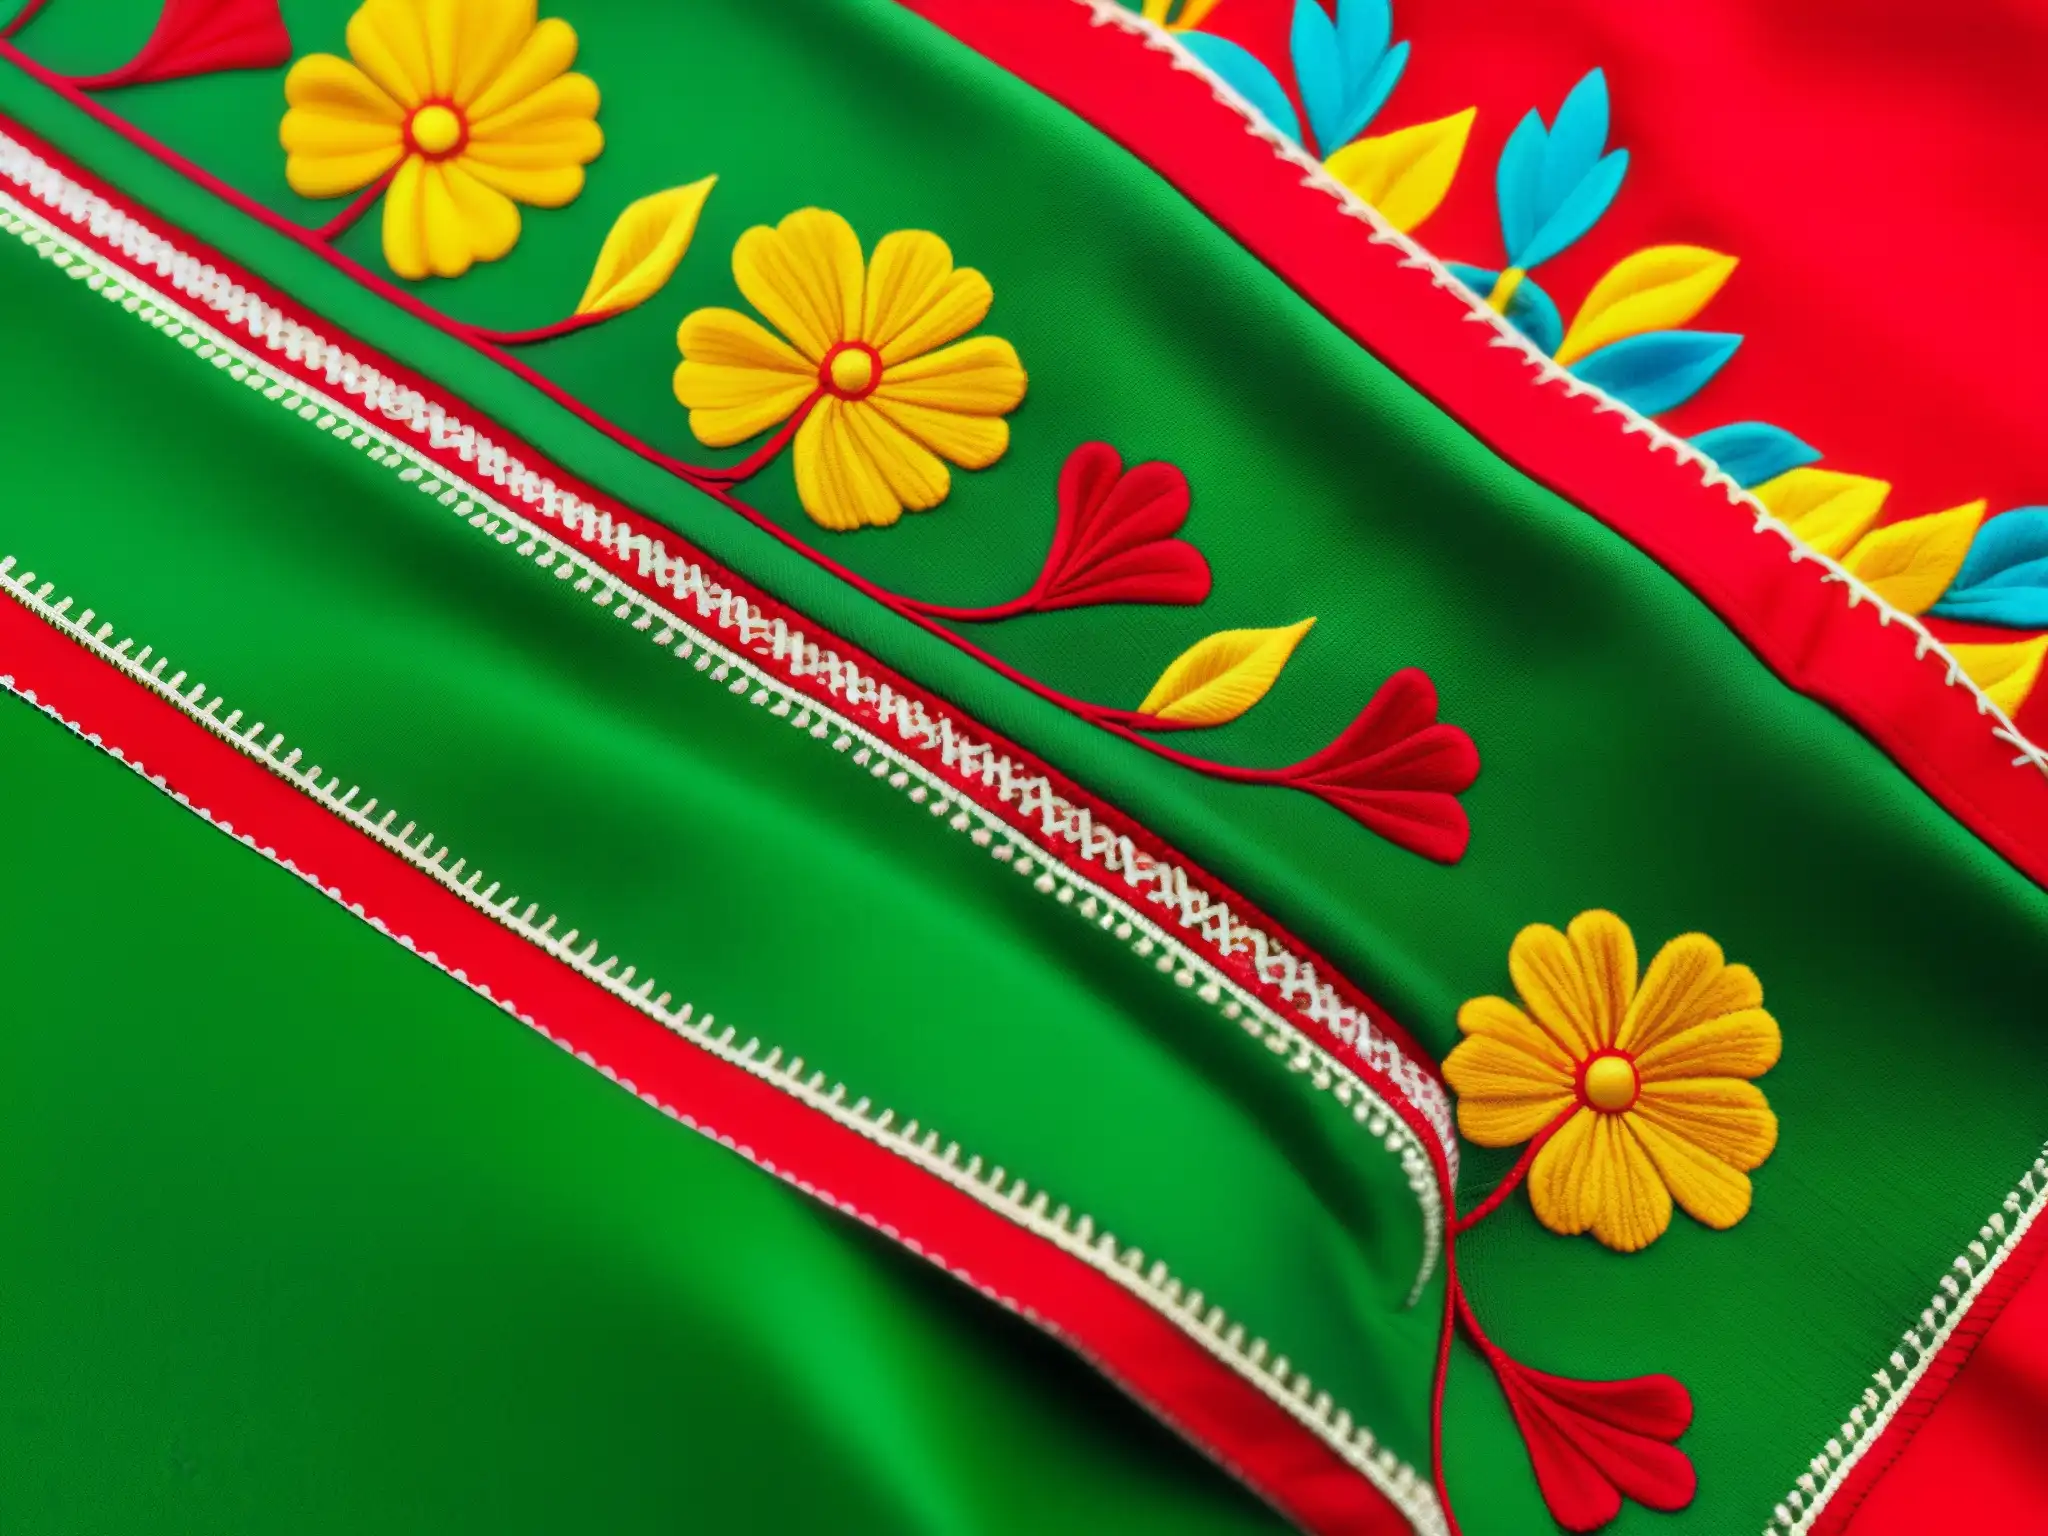 Detalle de bordado en vestido China Poblana, resaltando colores vibrantes y significado cultural